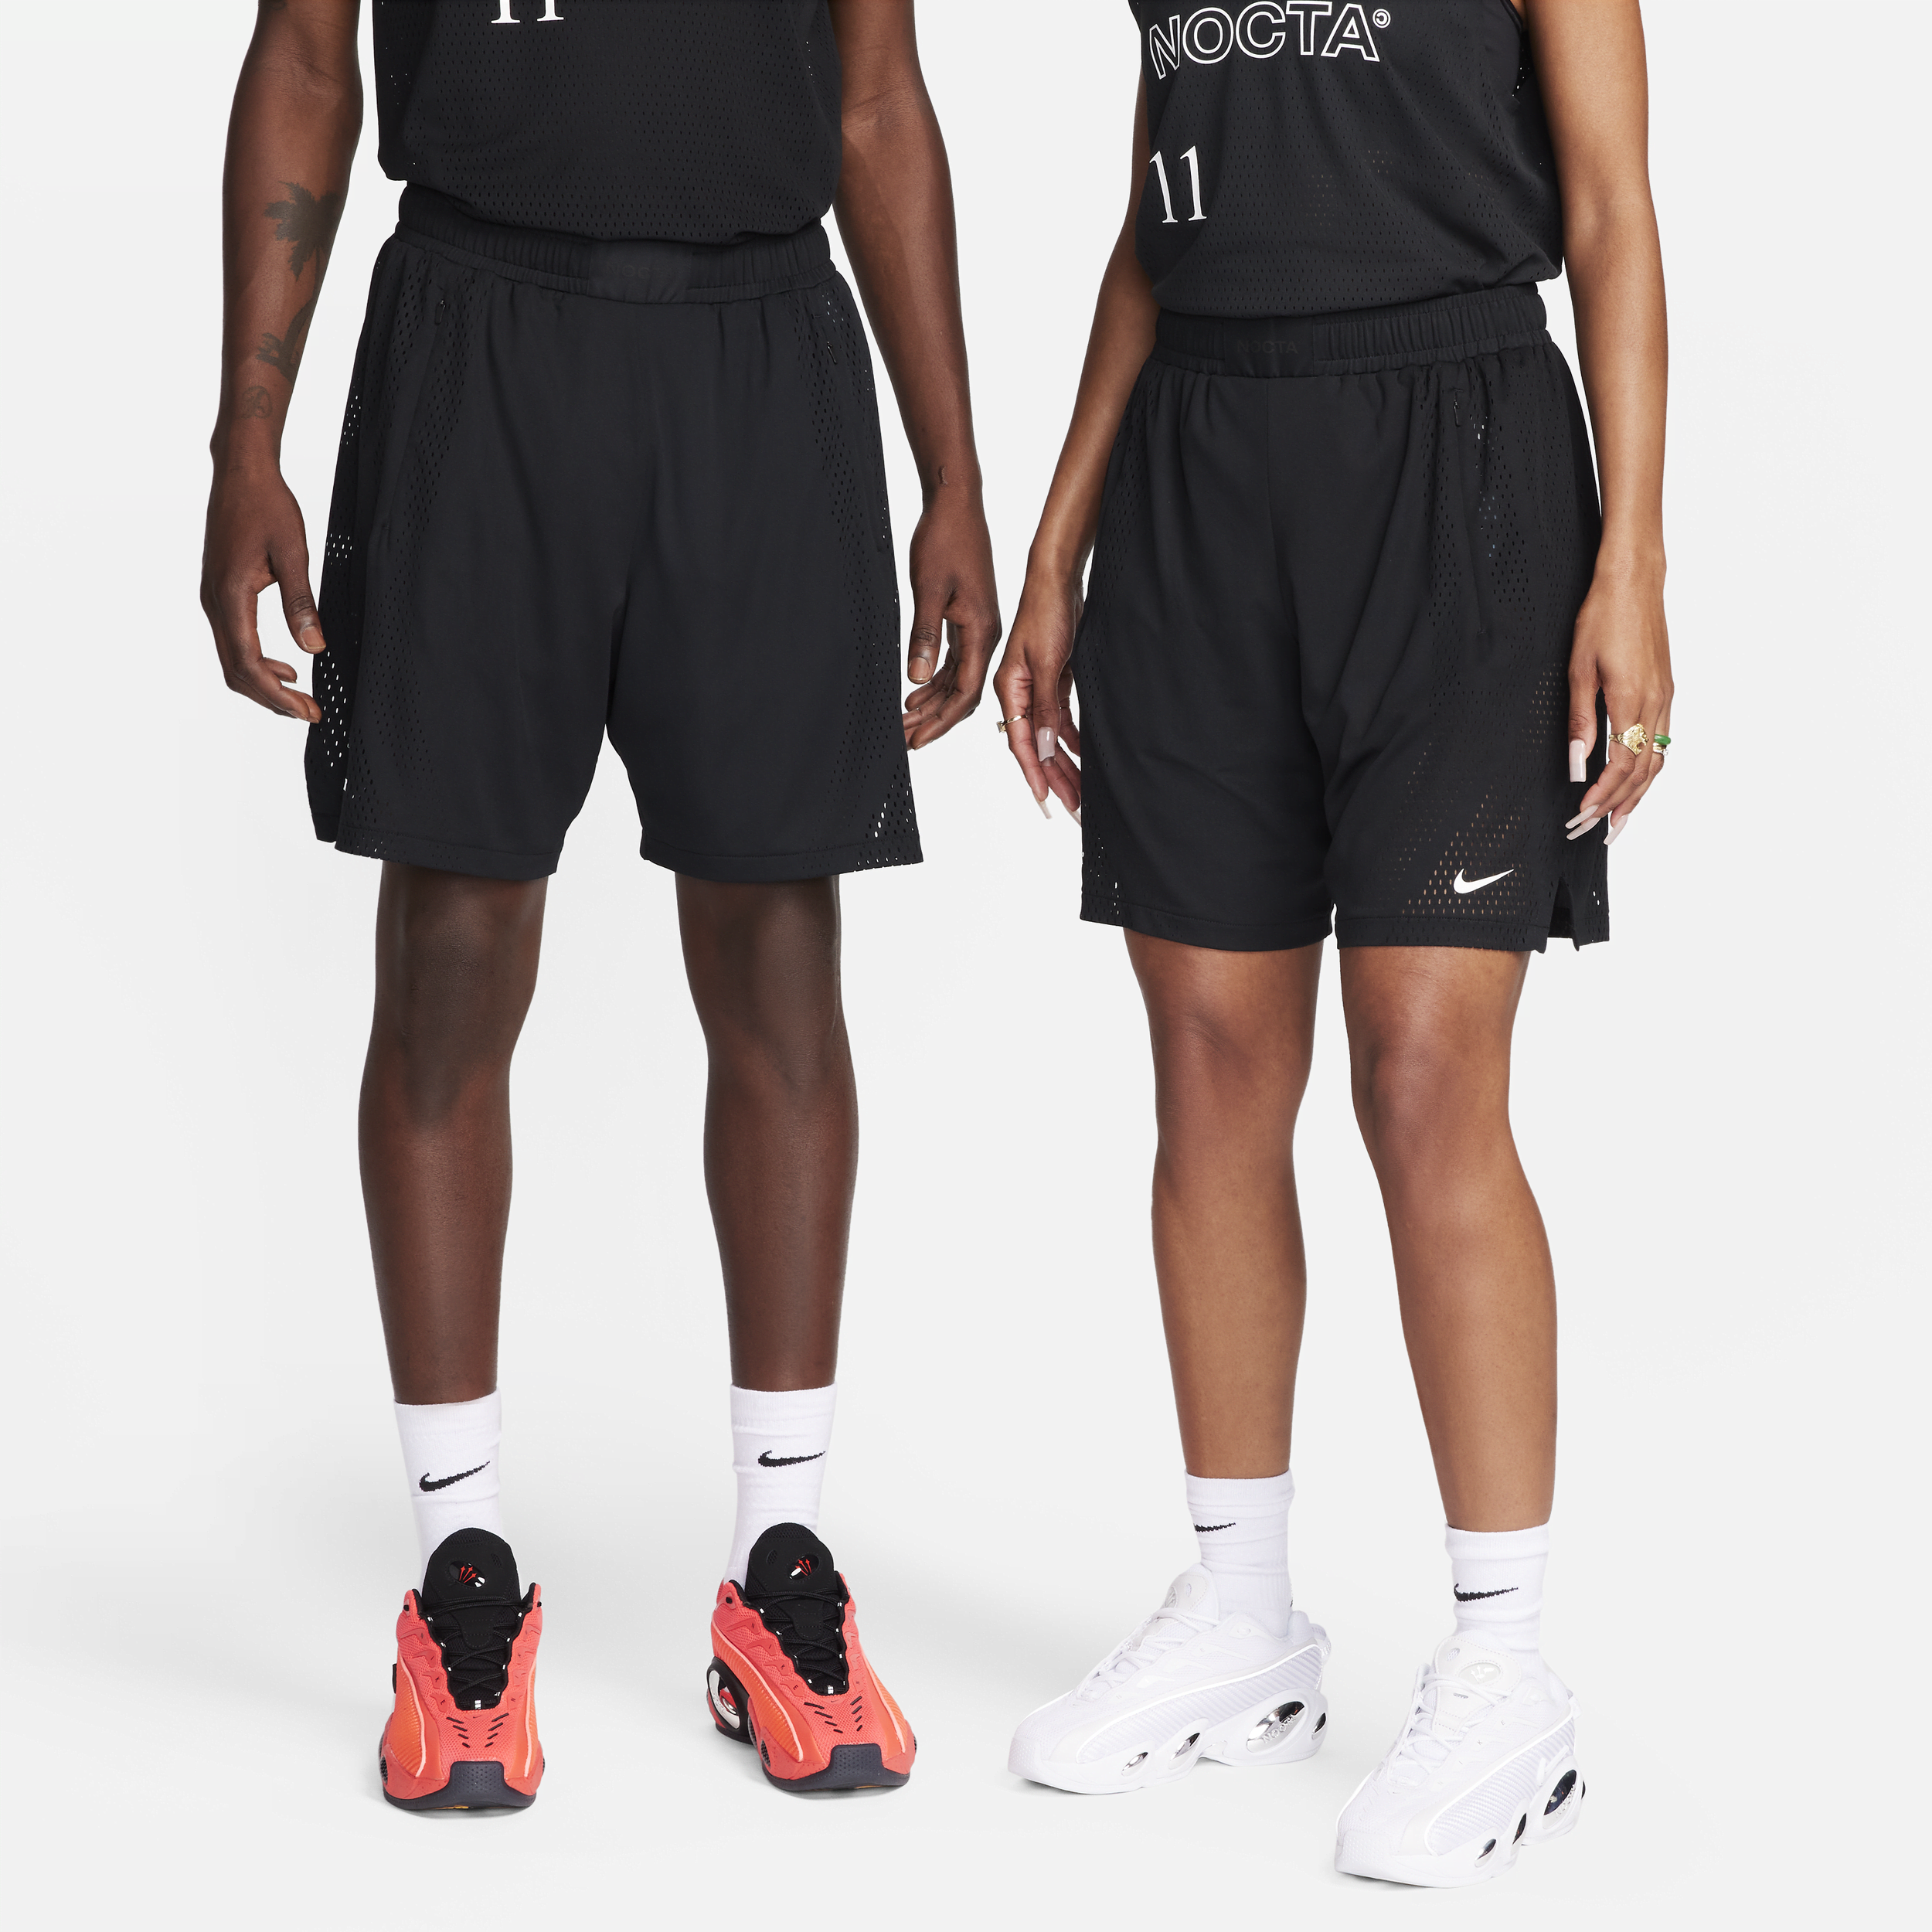 Nike NOCTA Dri-FIT-shorts til mænd - sort